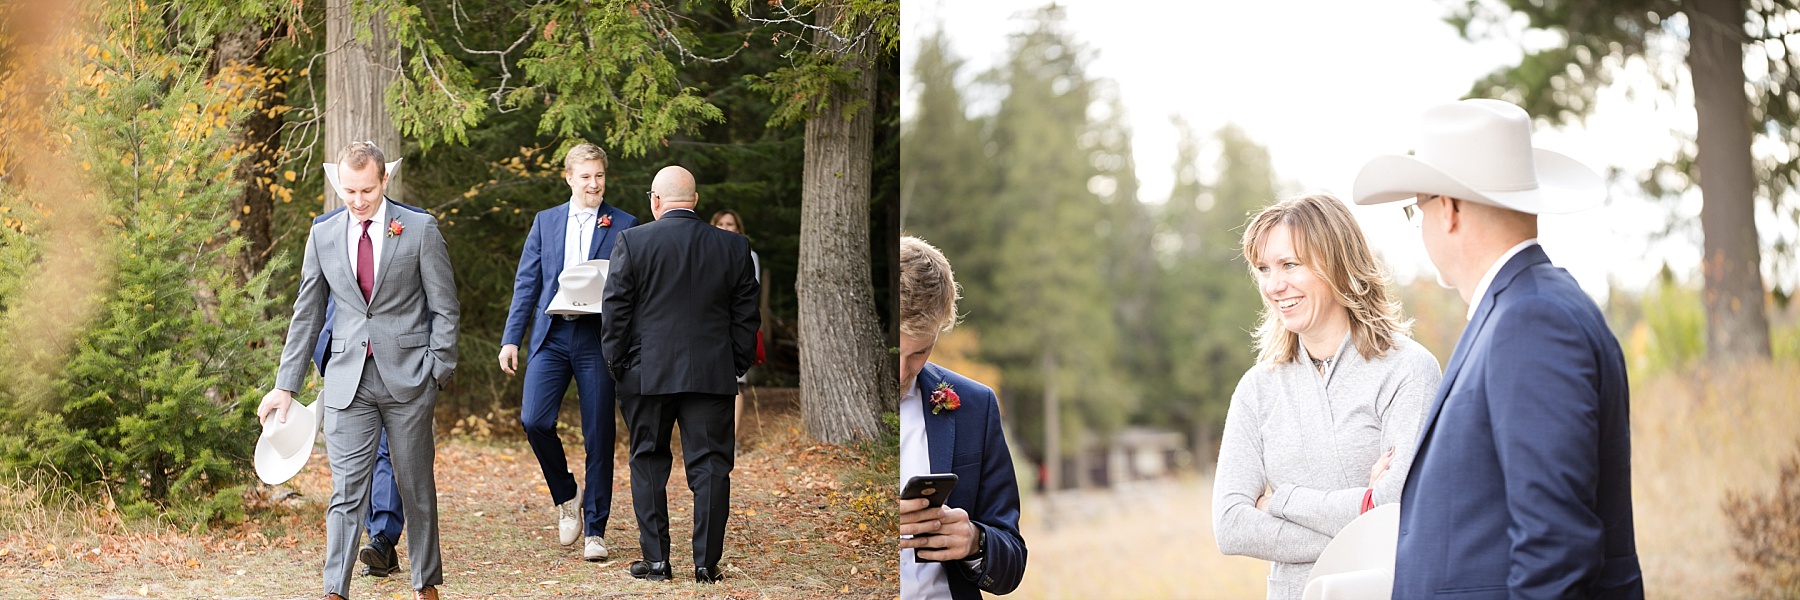 guests arriving for wedding at Glacier National Park elopement